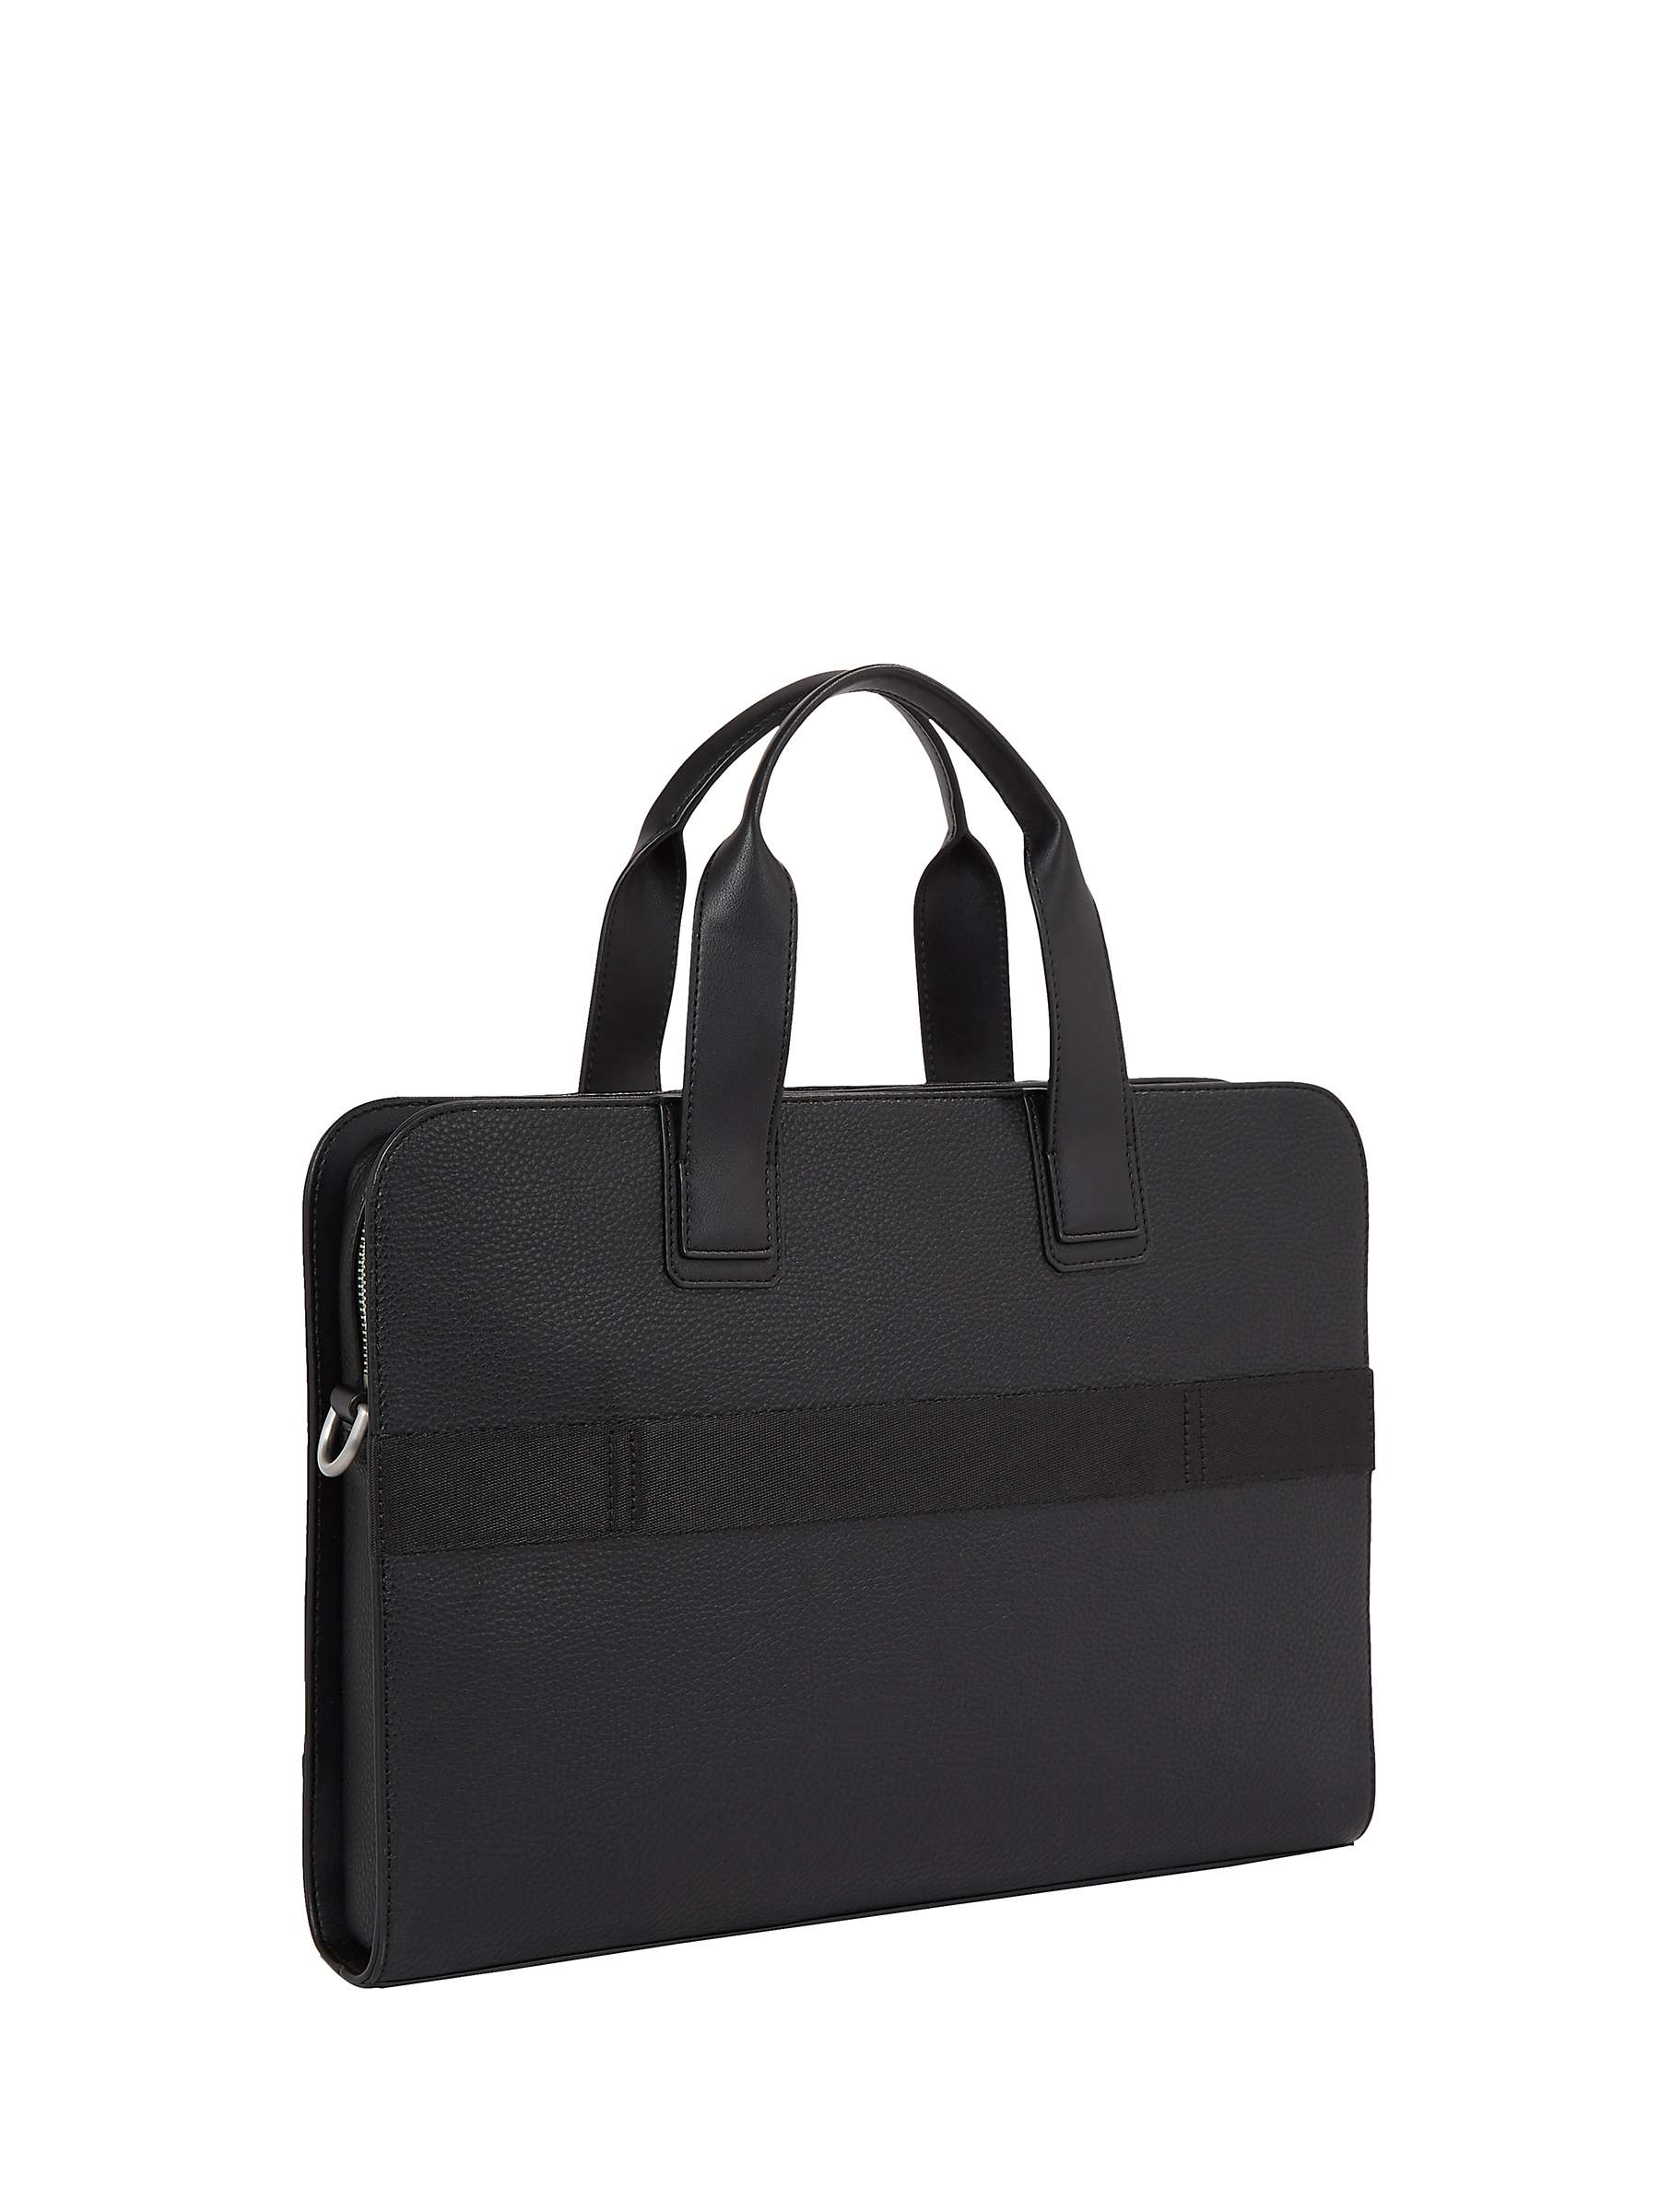 Buy Tommy Hilfiger Laptop Bag, Black Online at johnlewis.com